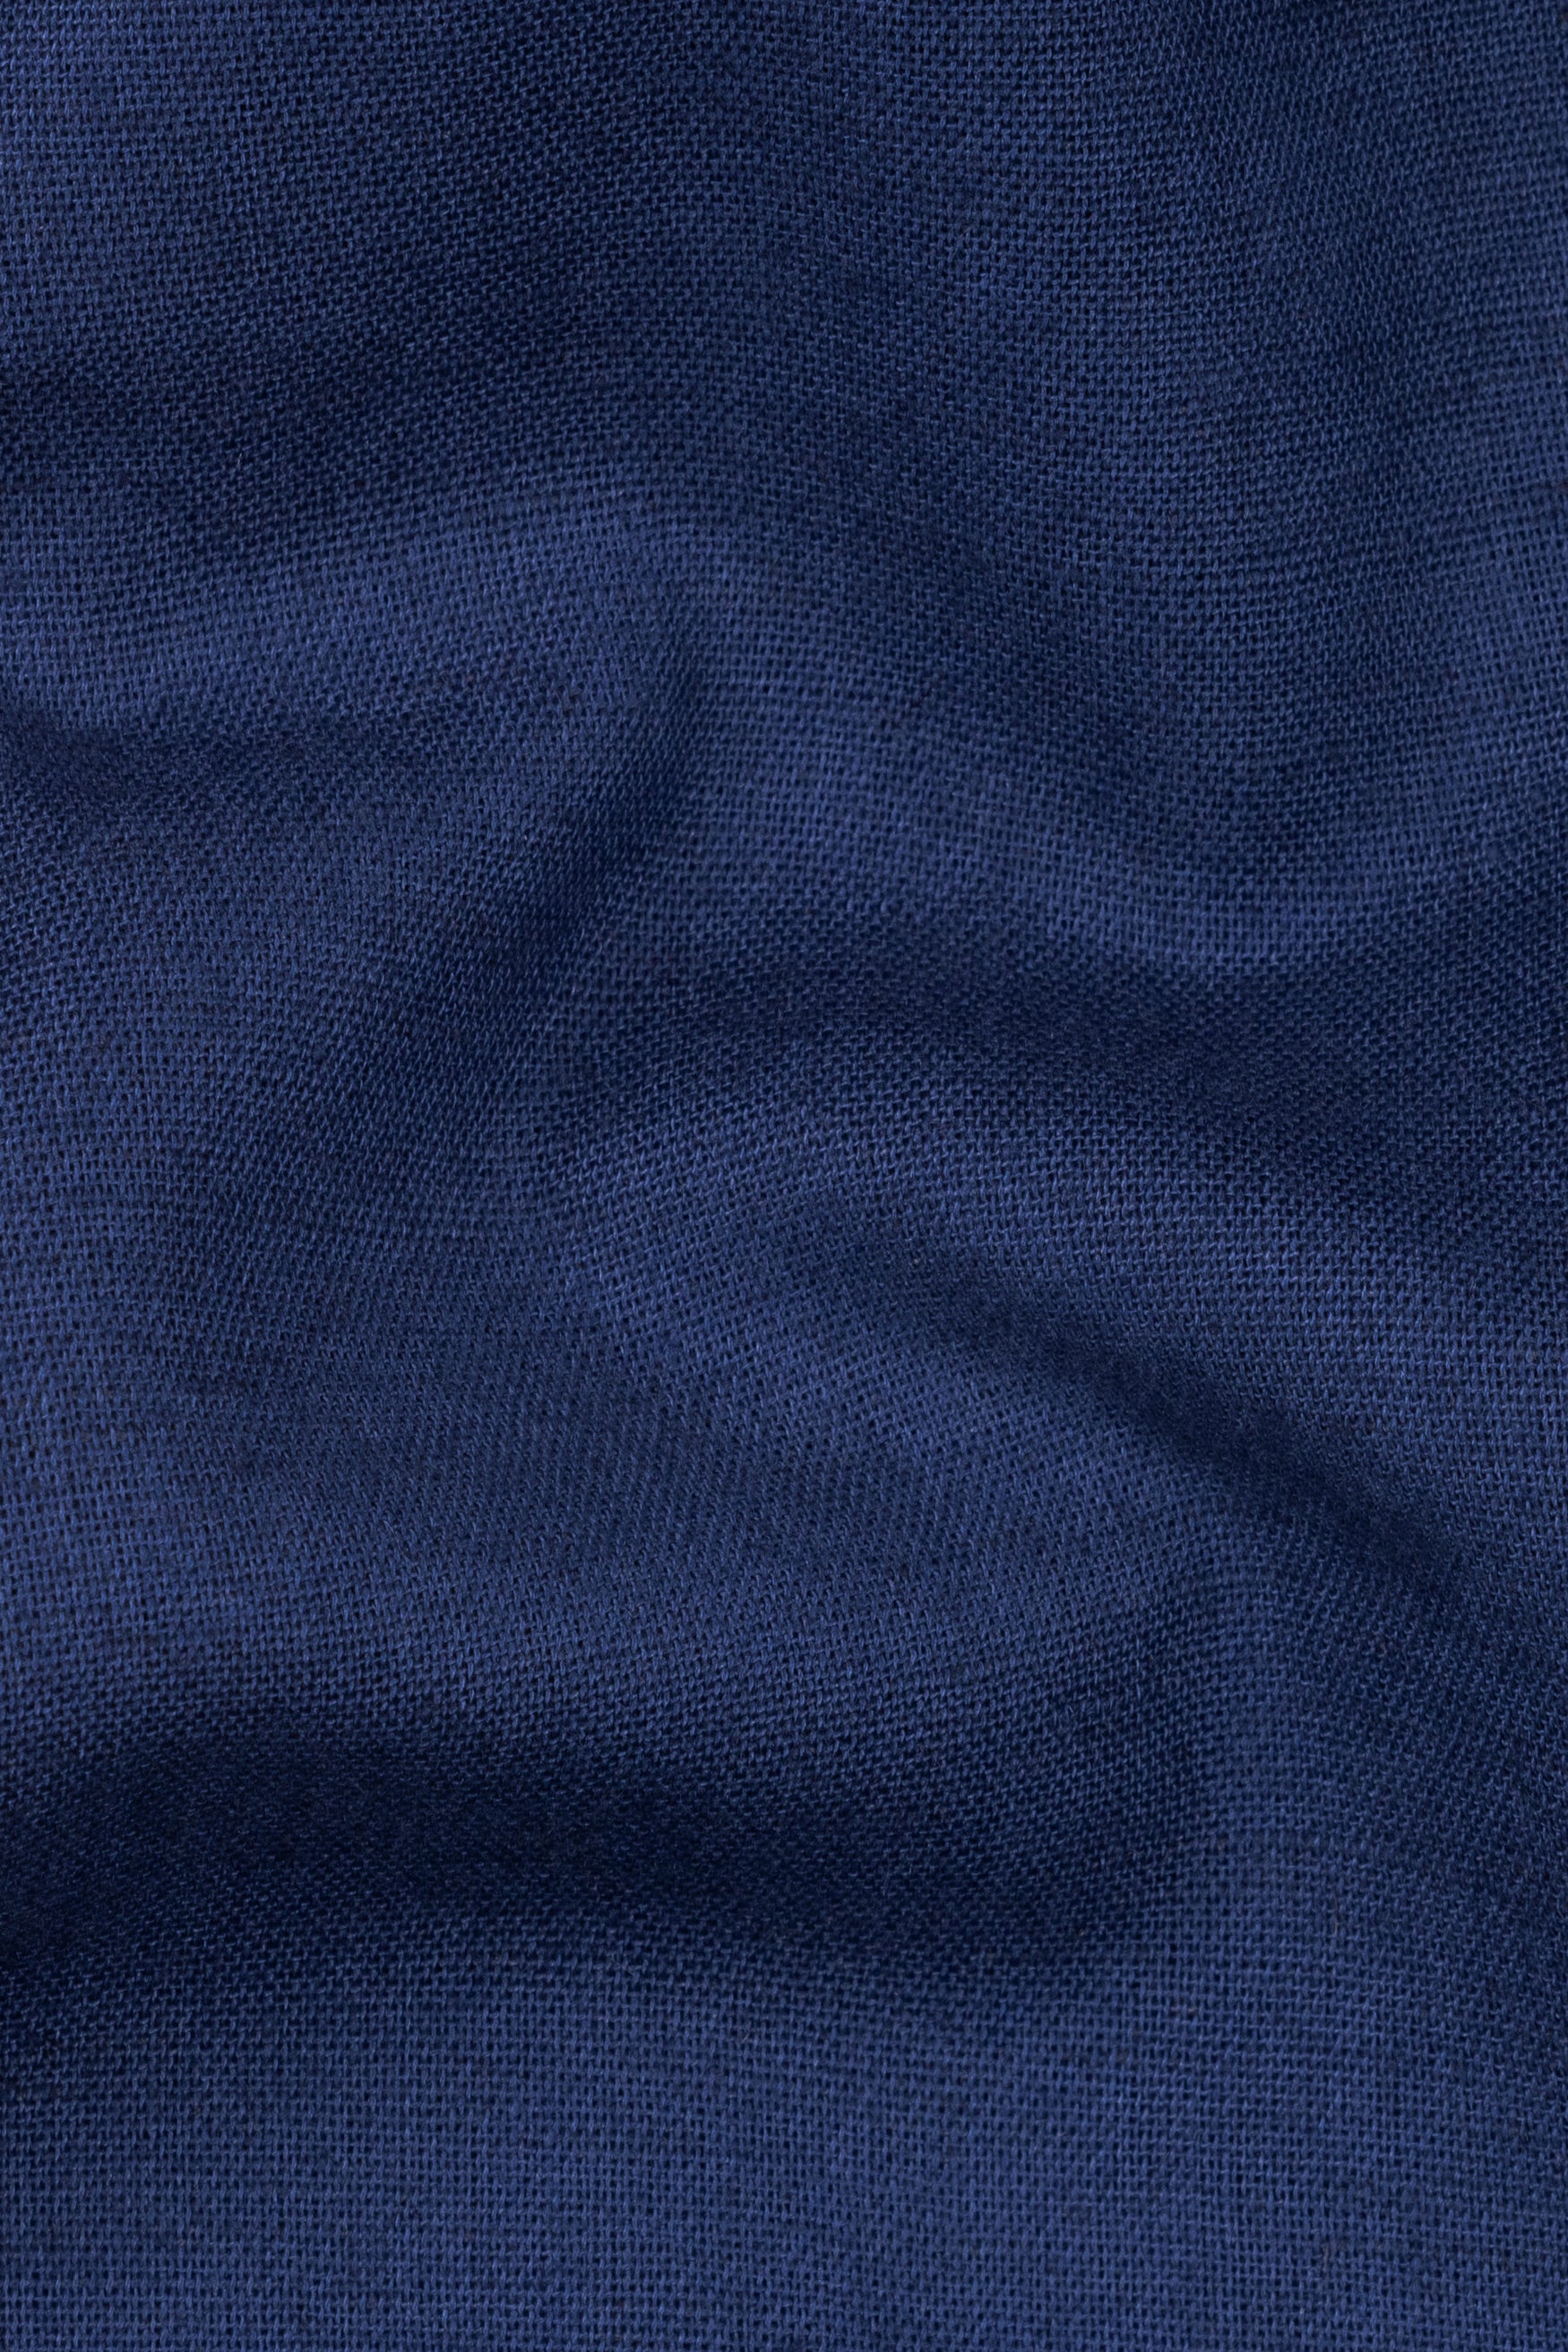 Cloud Burst Blue Textured Luxurious Linen Shorts